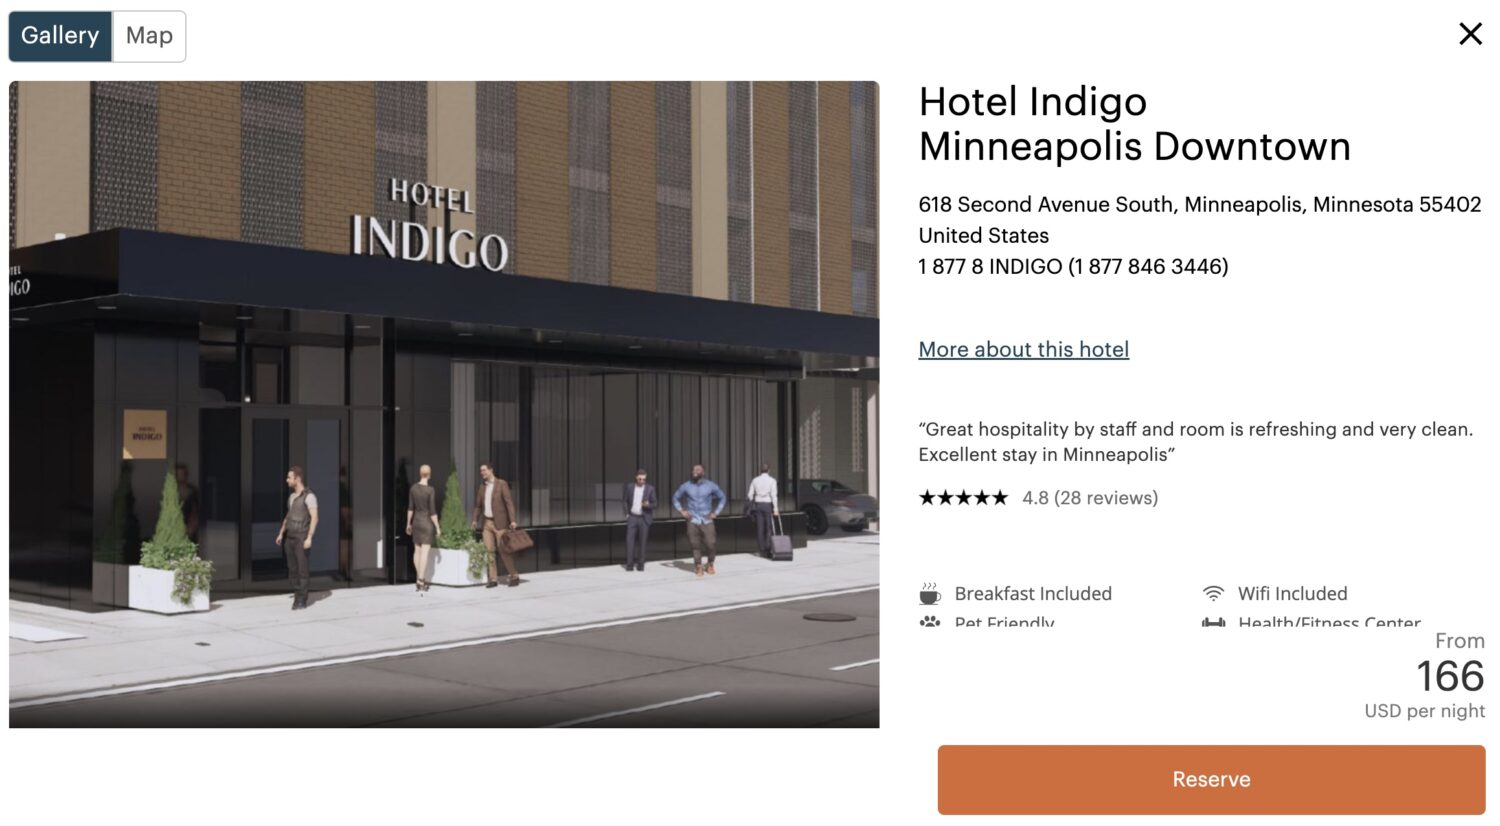 Hotel Indigo Downtown website